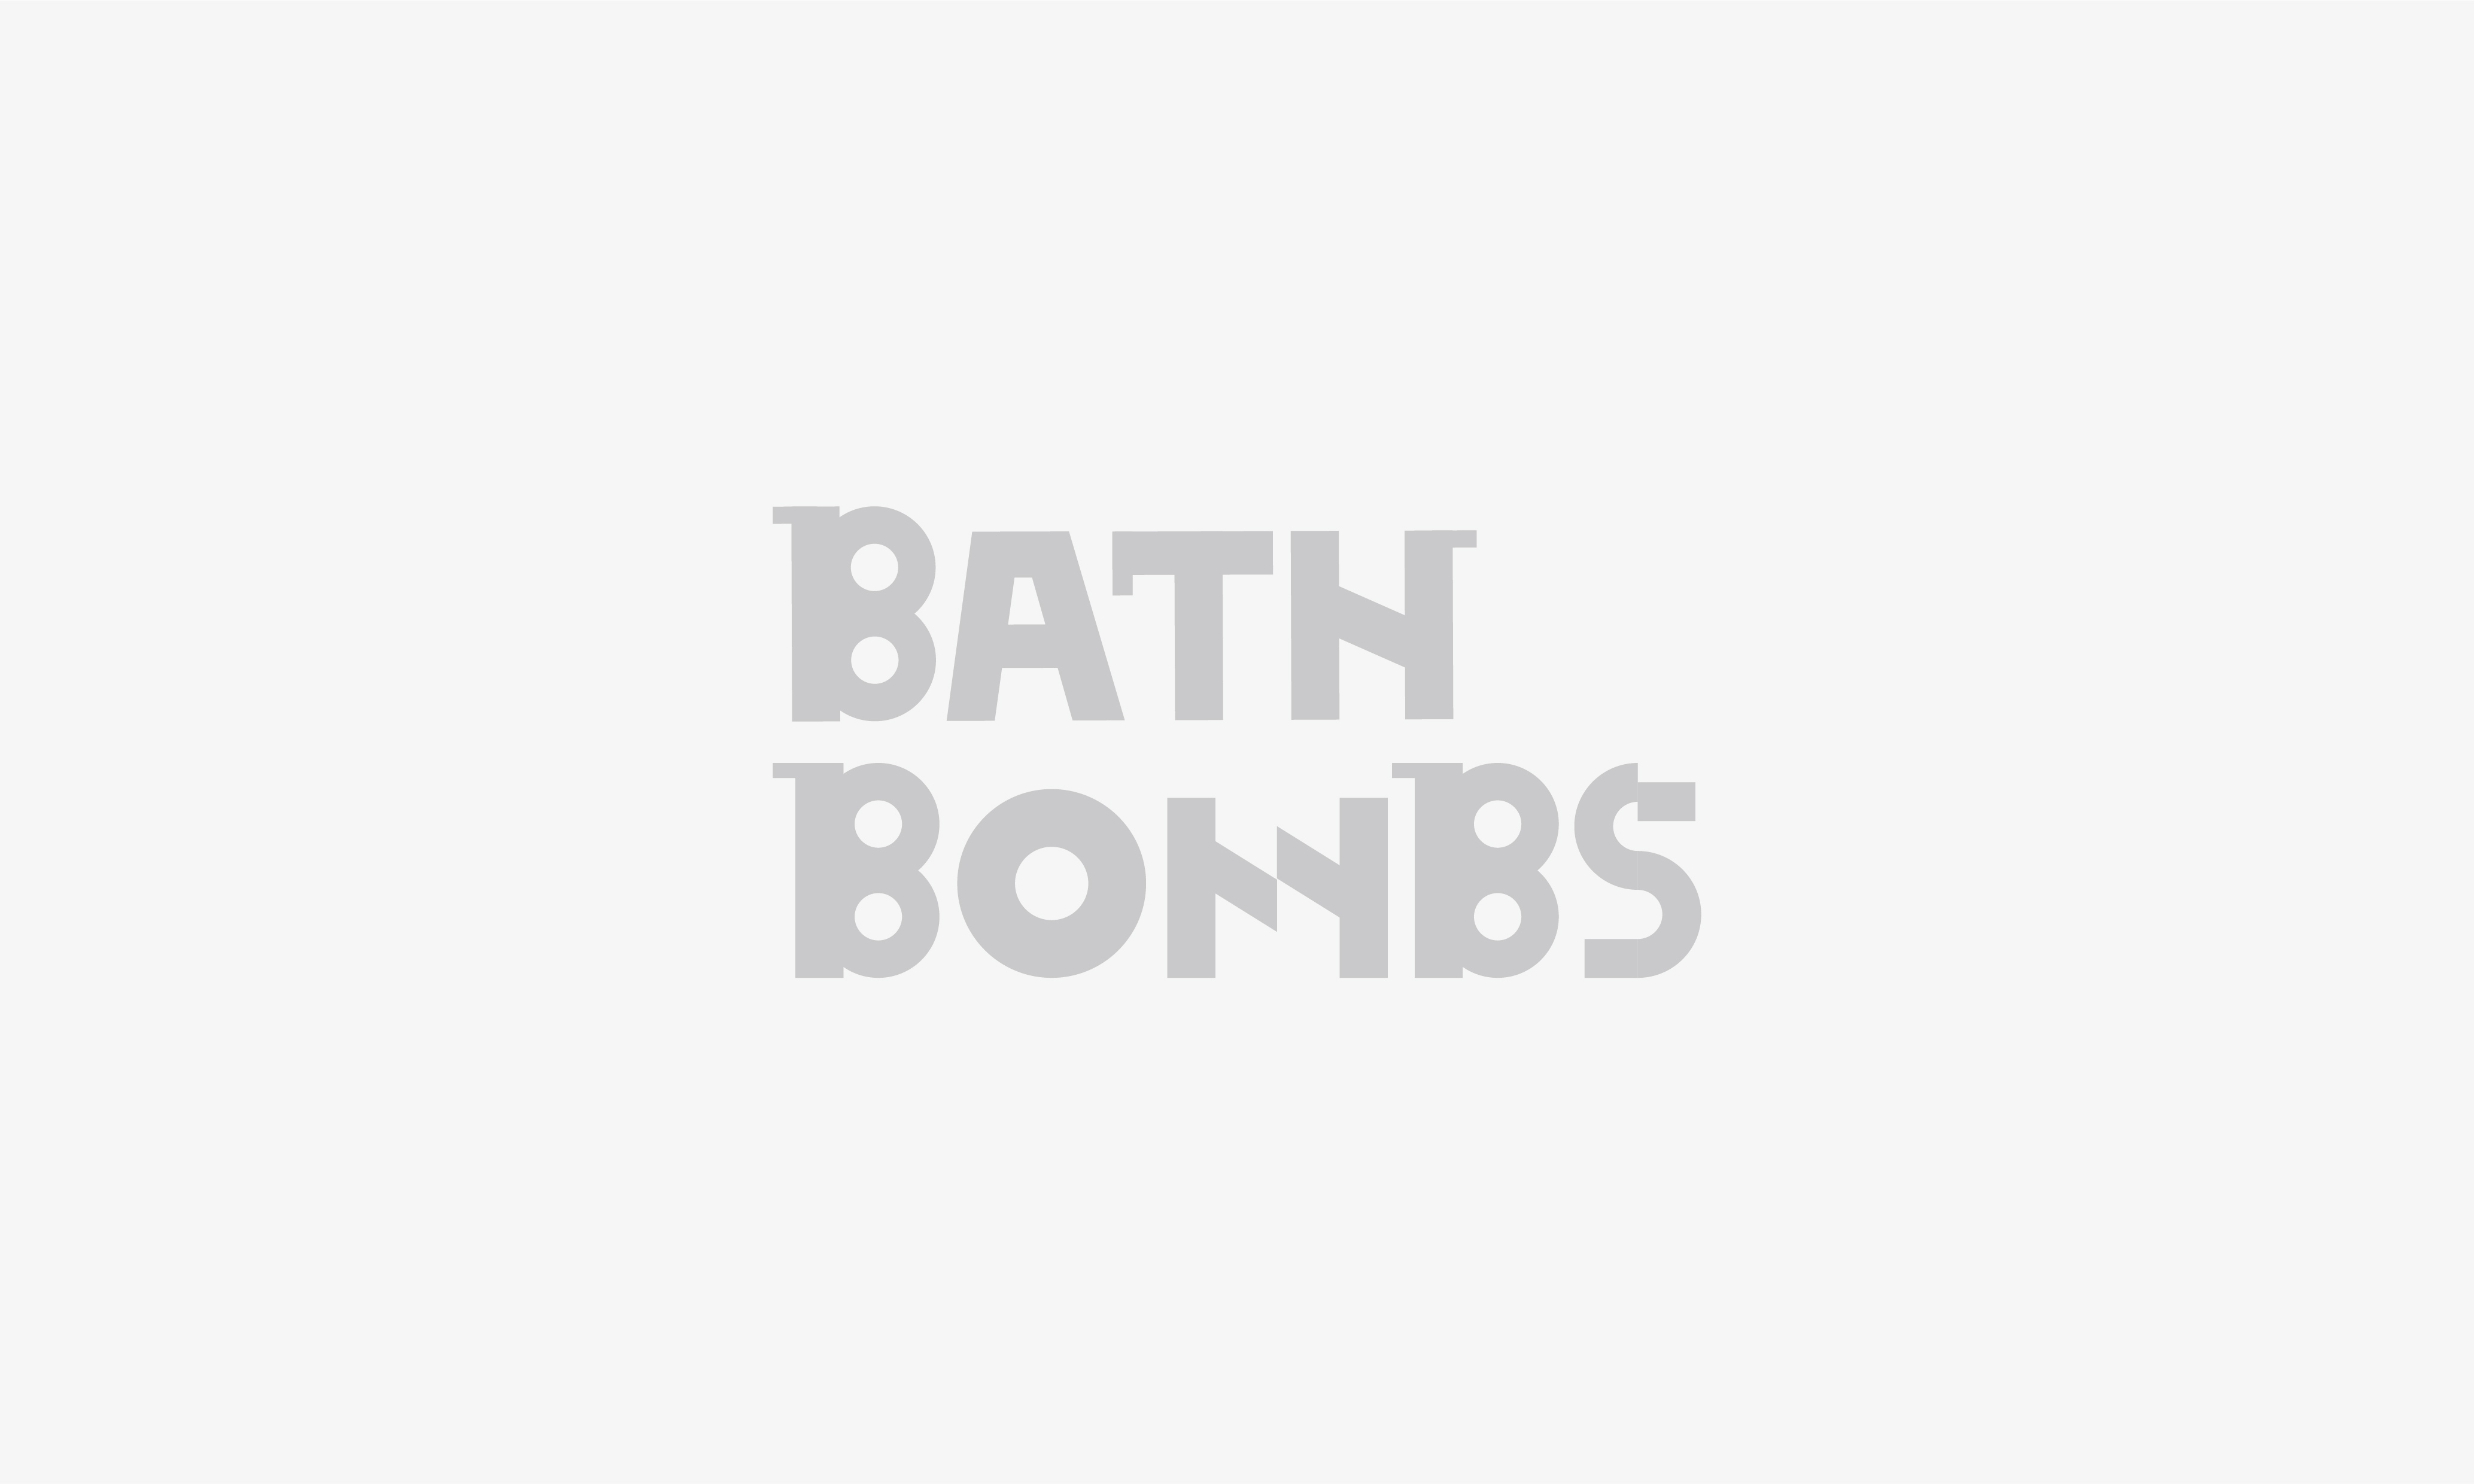 BATH BOMBS婴儿浴盐球包装盒视觉设计